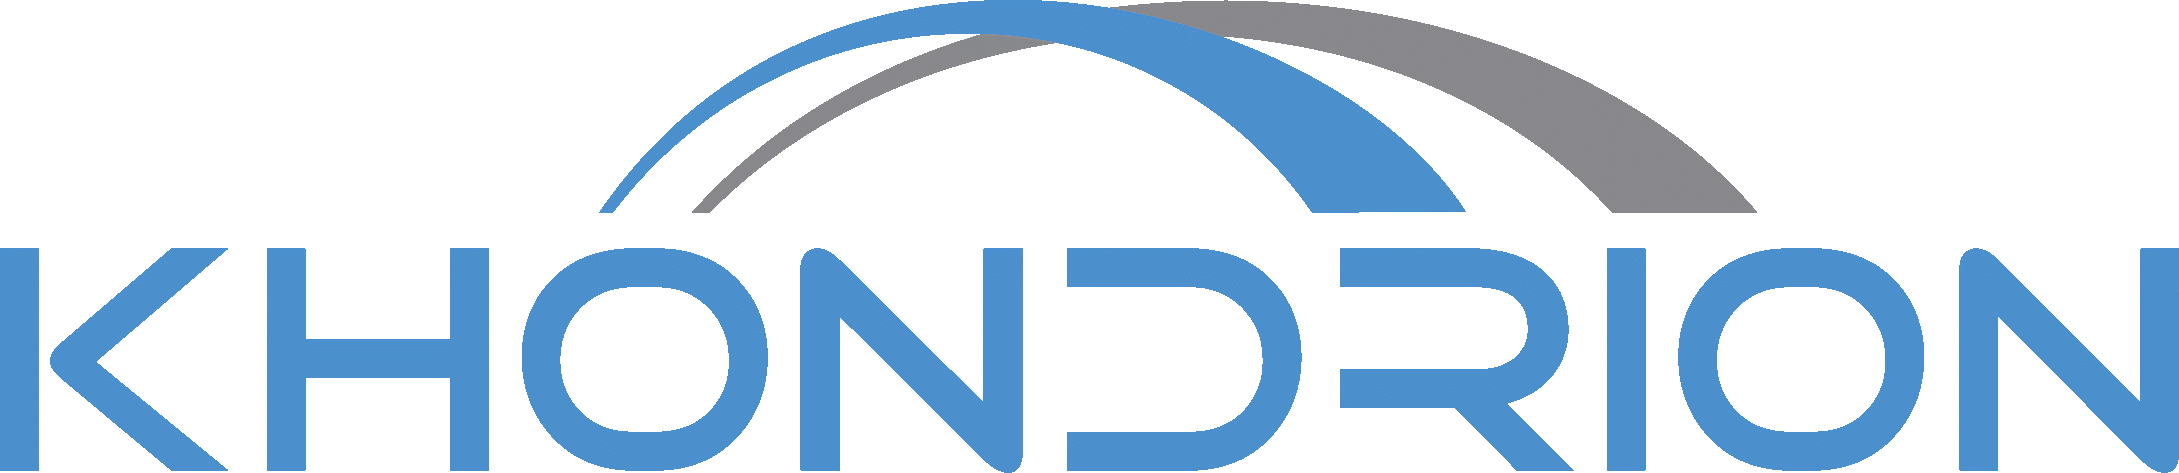 Khondrion logo.png